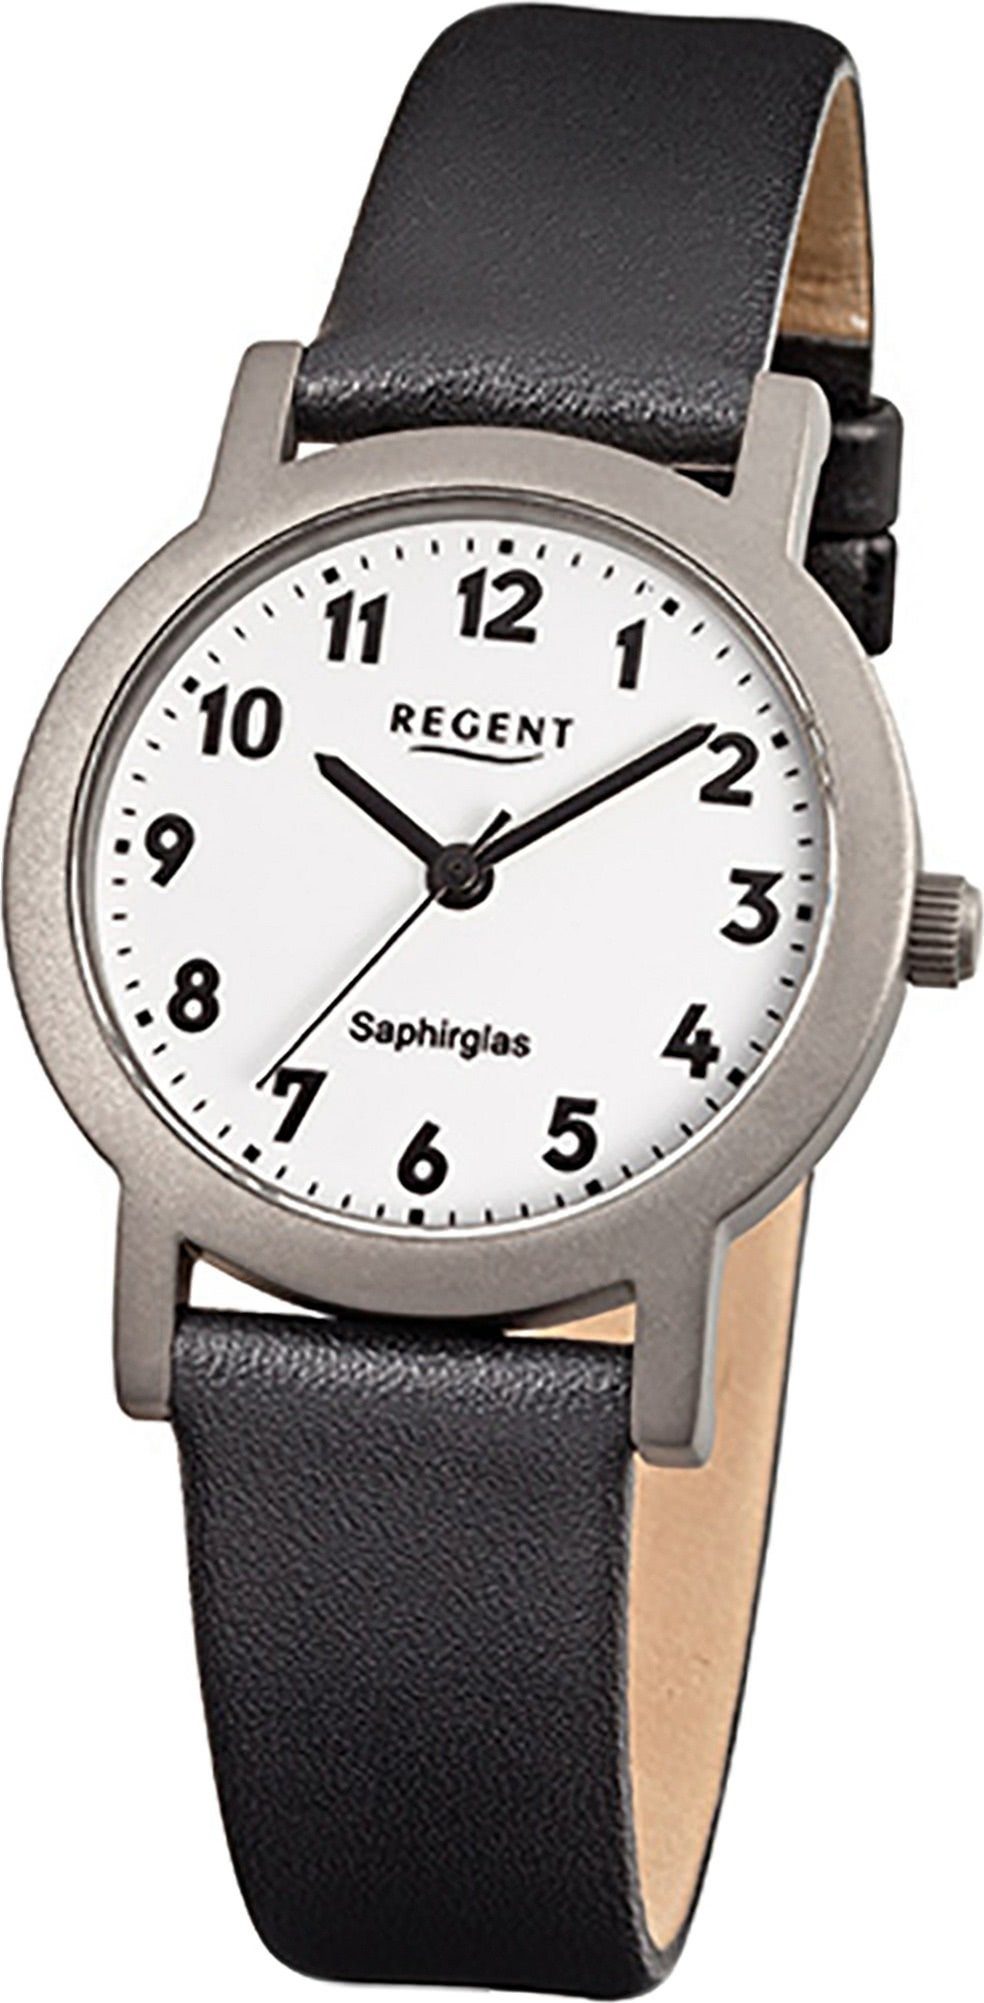 Regent Quarzuhr Regent Leder Damen Uhr F-663 Quarzuhr, Damenuhr Lederarmband schwarz, rundes Gehäuse, klein (ca. 28mm)